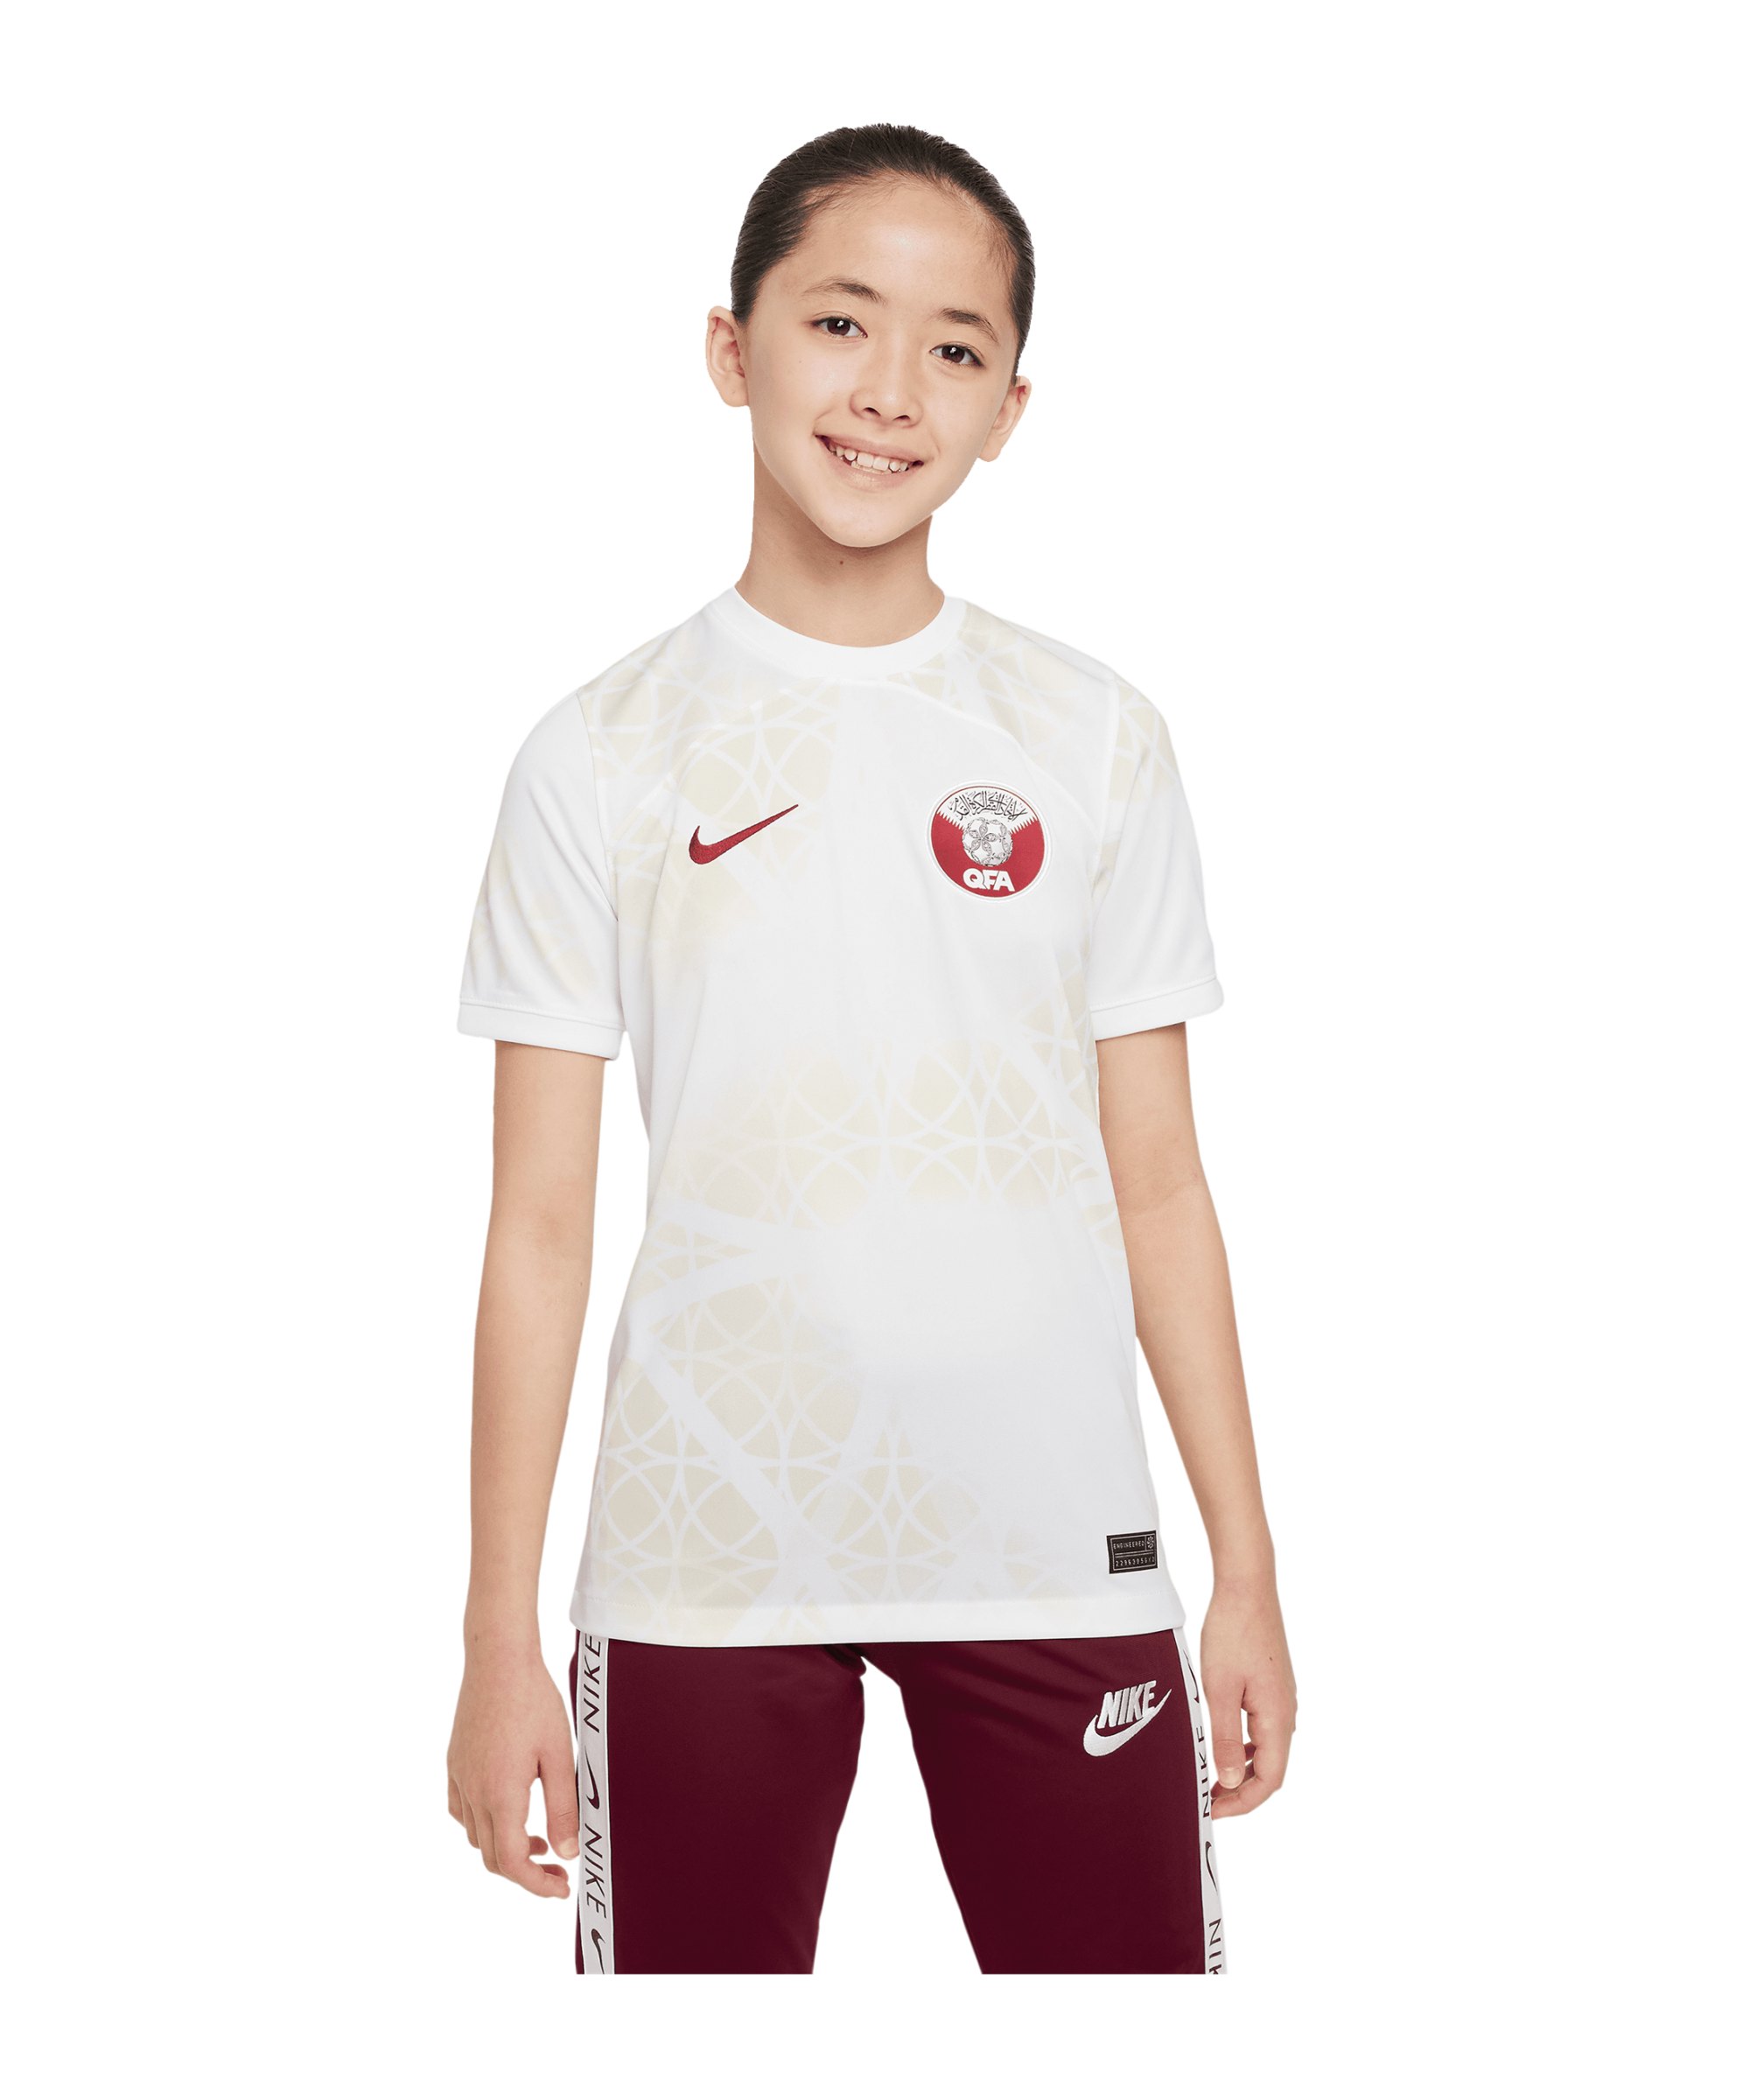 Nike Katar Trikot Away WM 2022 Kids Weiss F100 - weiss